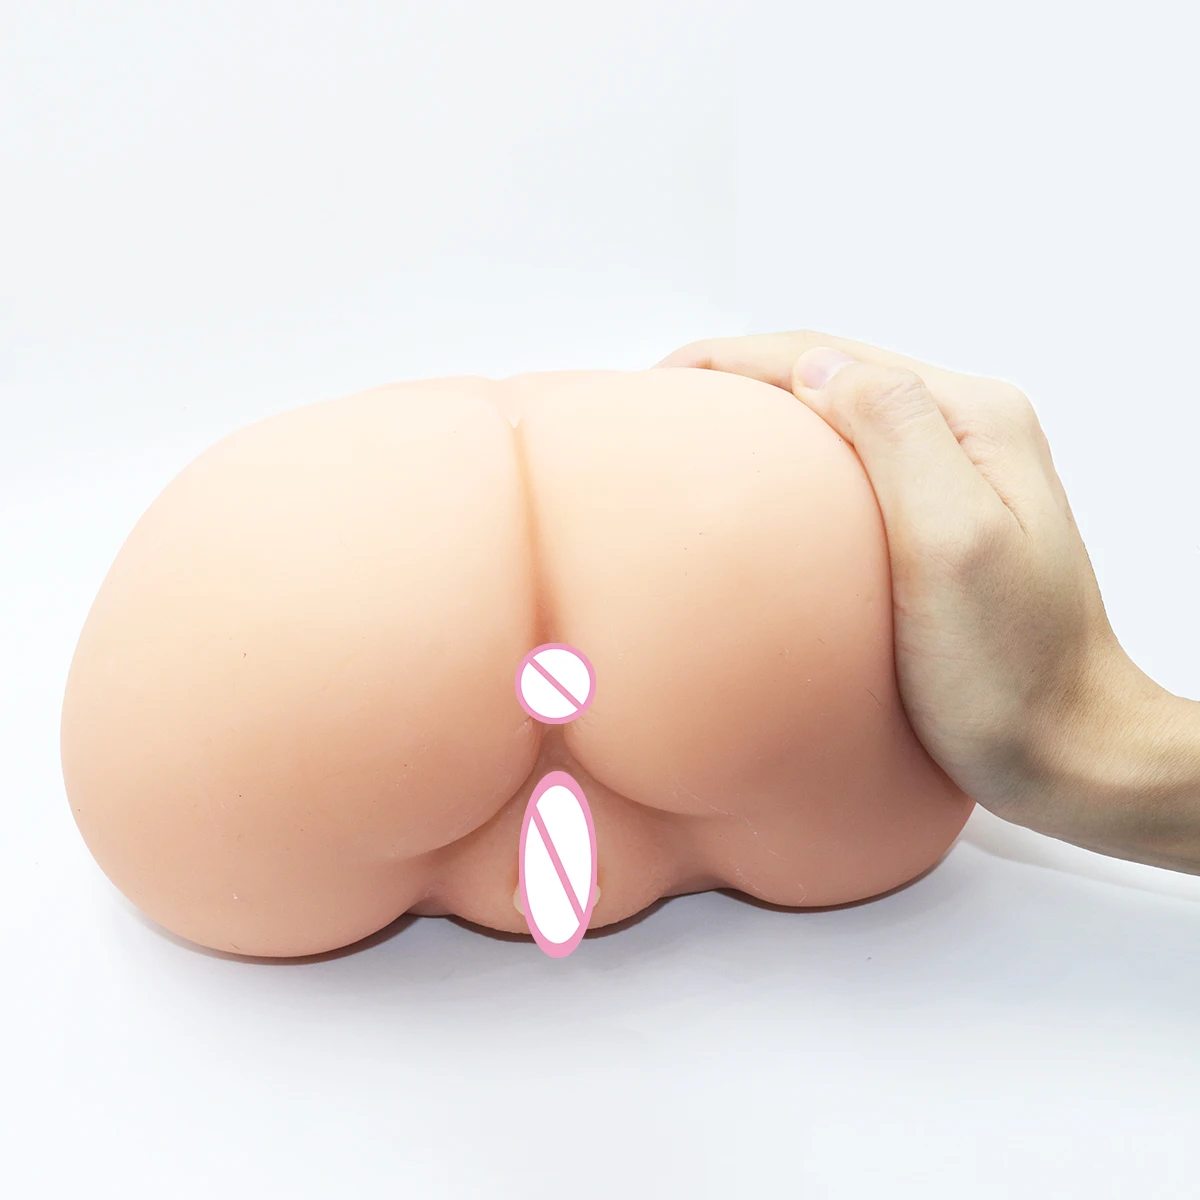 вагины с жопами секс игрушка фото 102